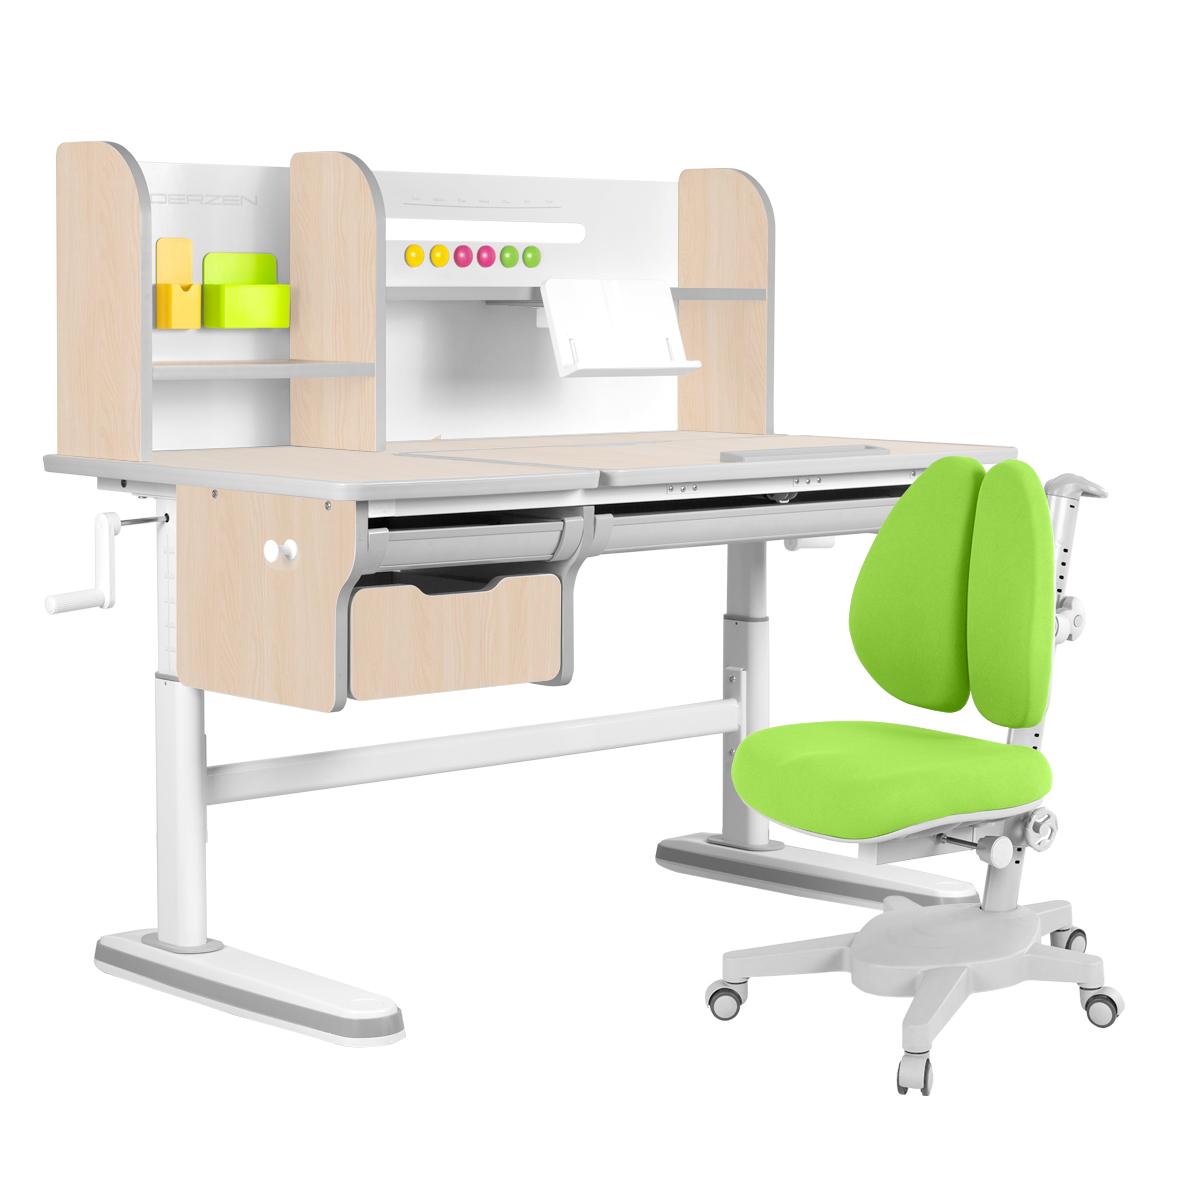 Комплект парта KinderZen Dali Plus клен/серый с зеленым креслом Armata Duos комплект парта anatomica study 120 lux клен серый с зеленым креслом armata duos